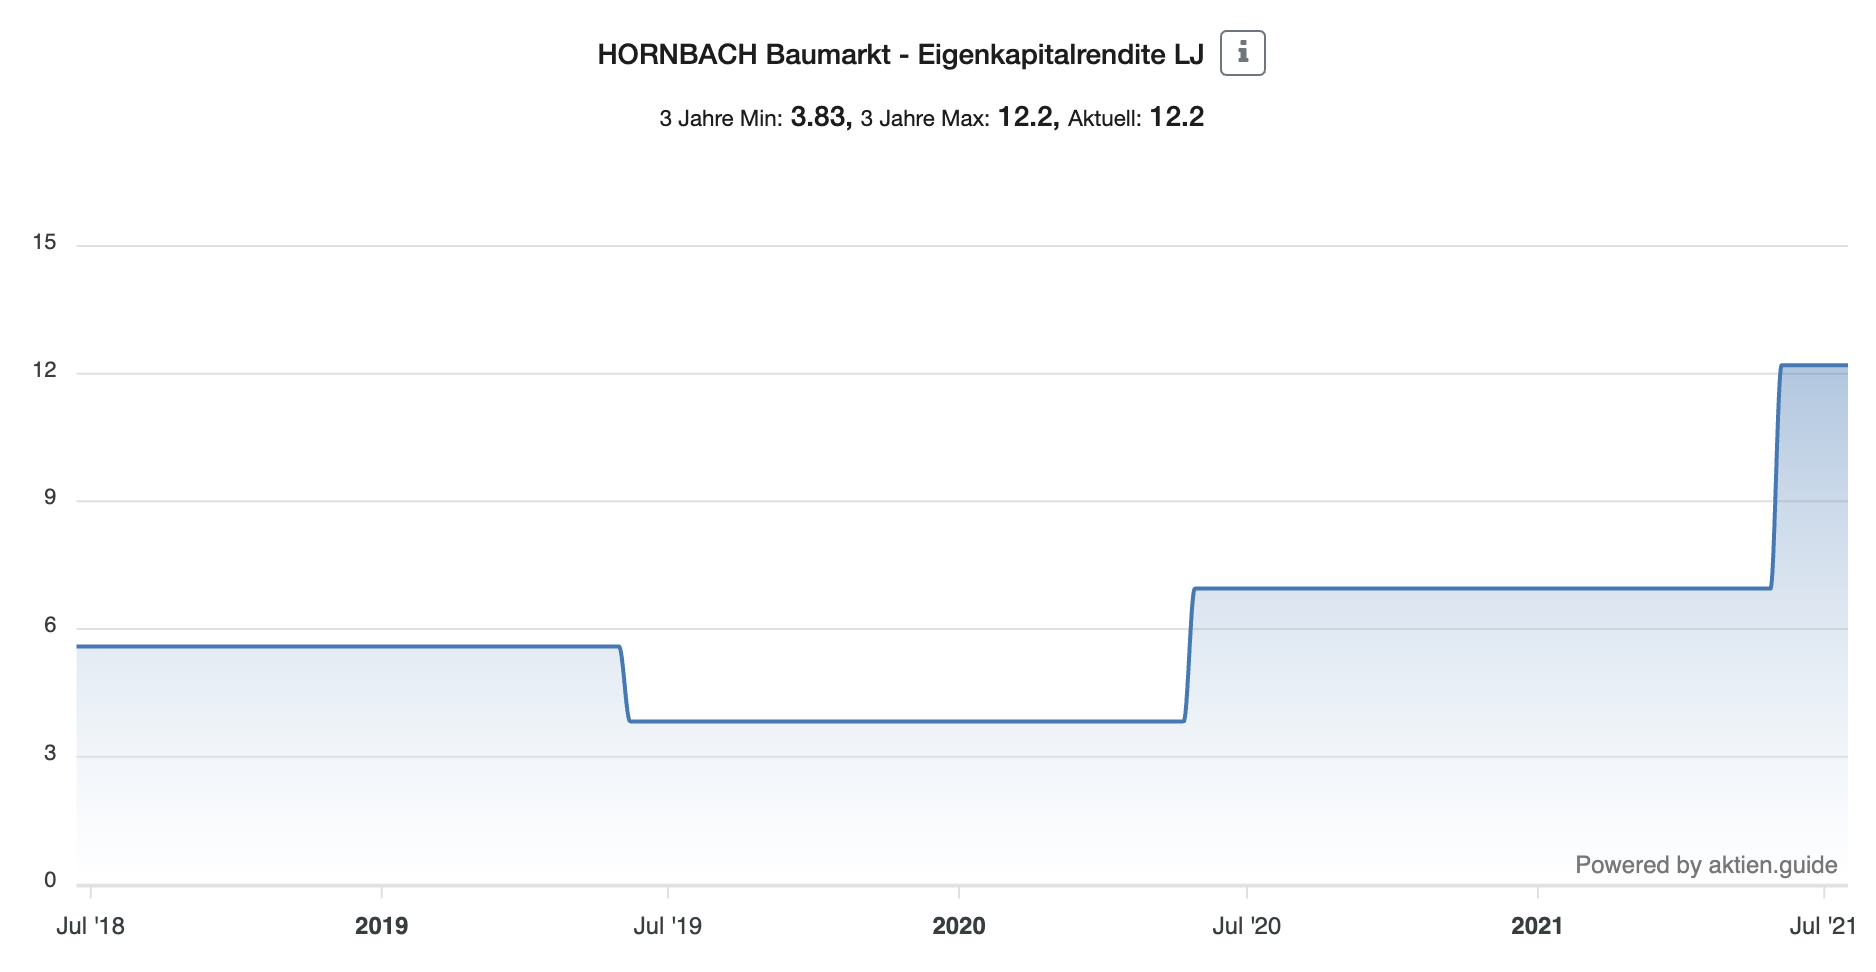 Hornbach Baumarkt Aktie Eigenkapitalrendite